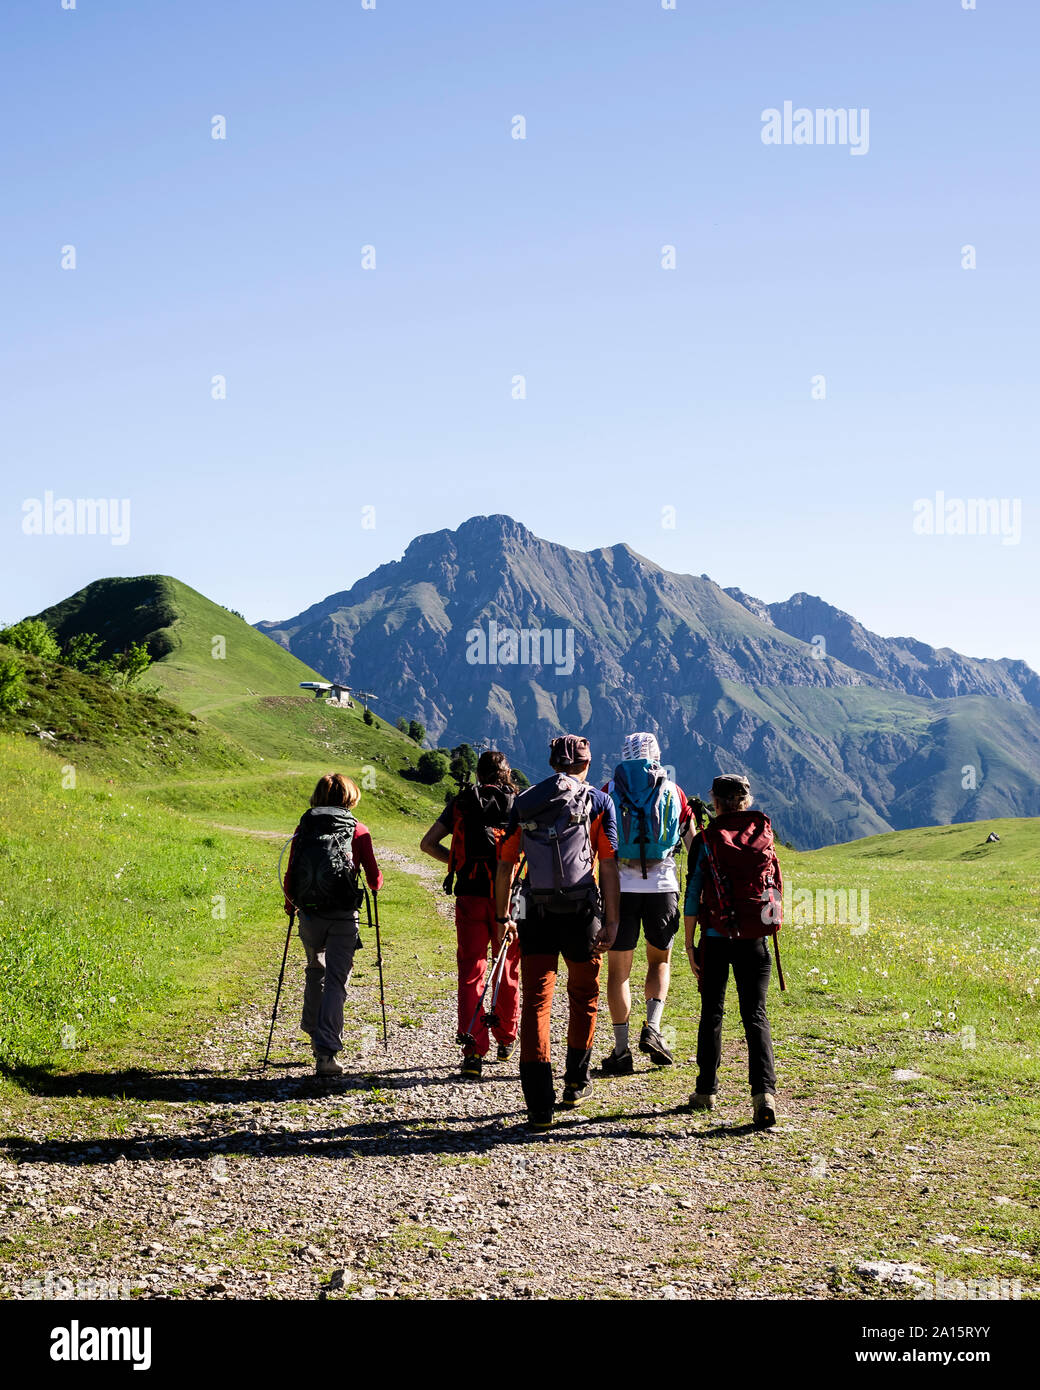 Gruppo di escursionisti a piedi nei monti, Orobie, Lecco, Italia Foto Stock